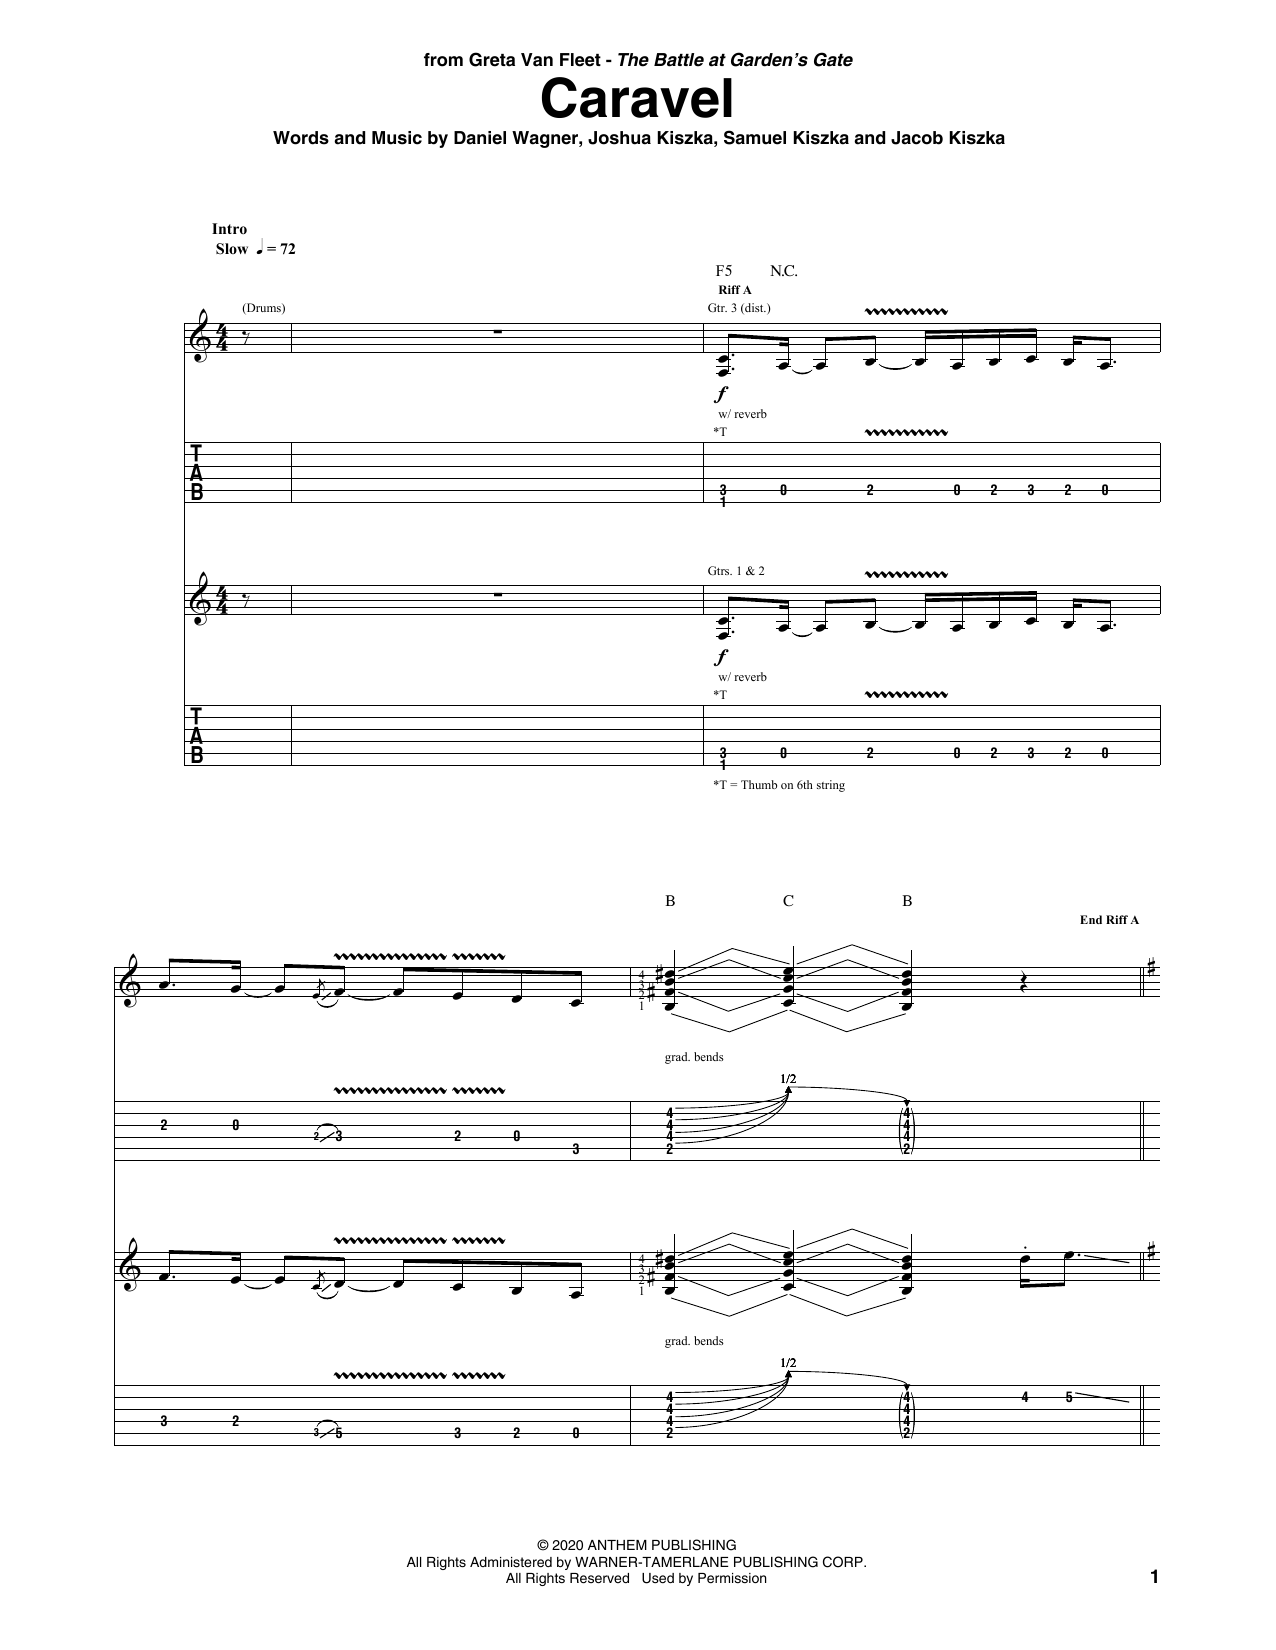 Greta Van Fleet Caravel Sheet Music Notes & Chords for Guitar Tab - Download or Print PDF